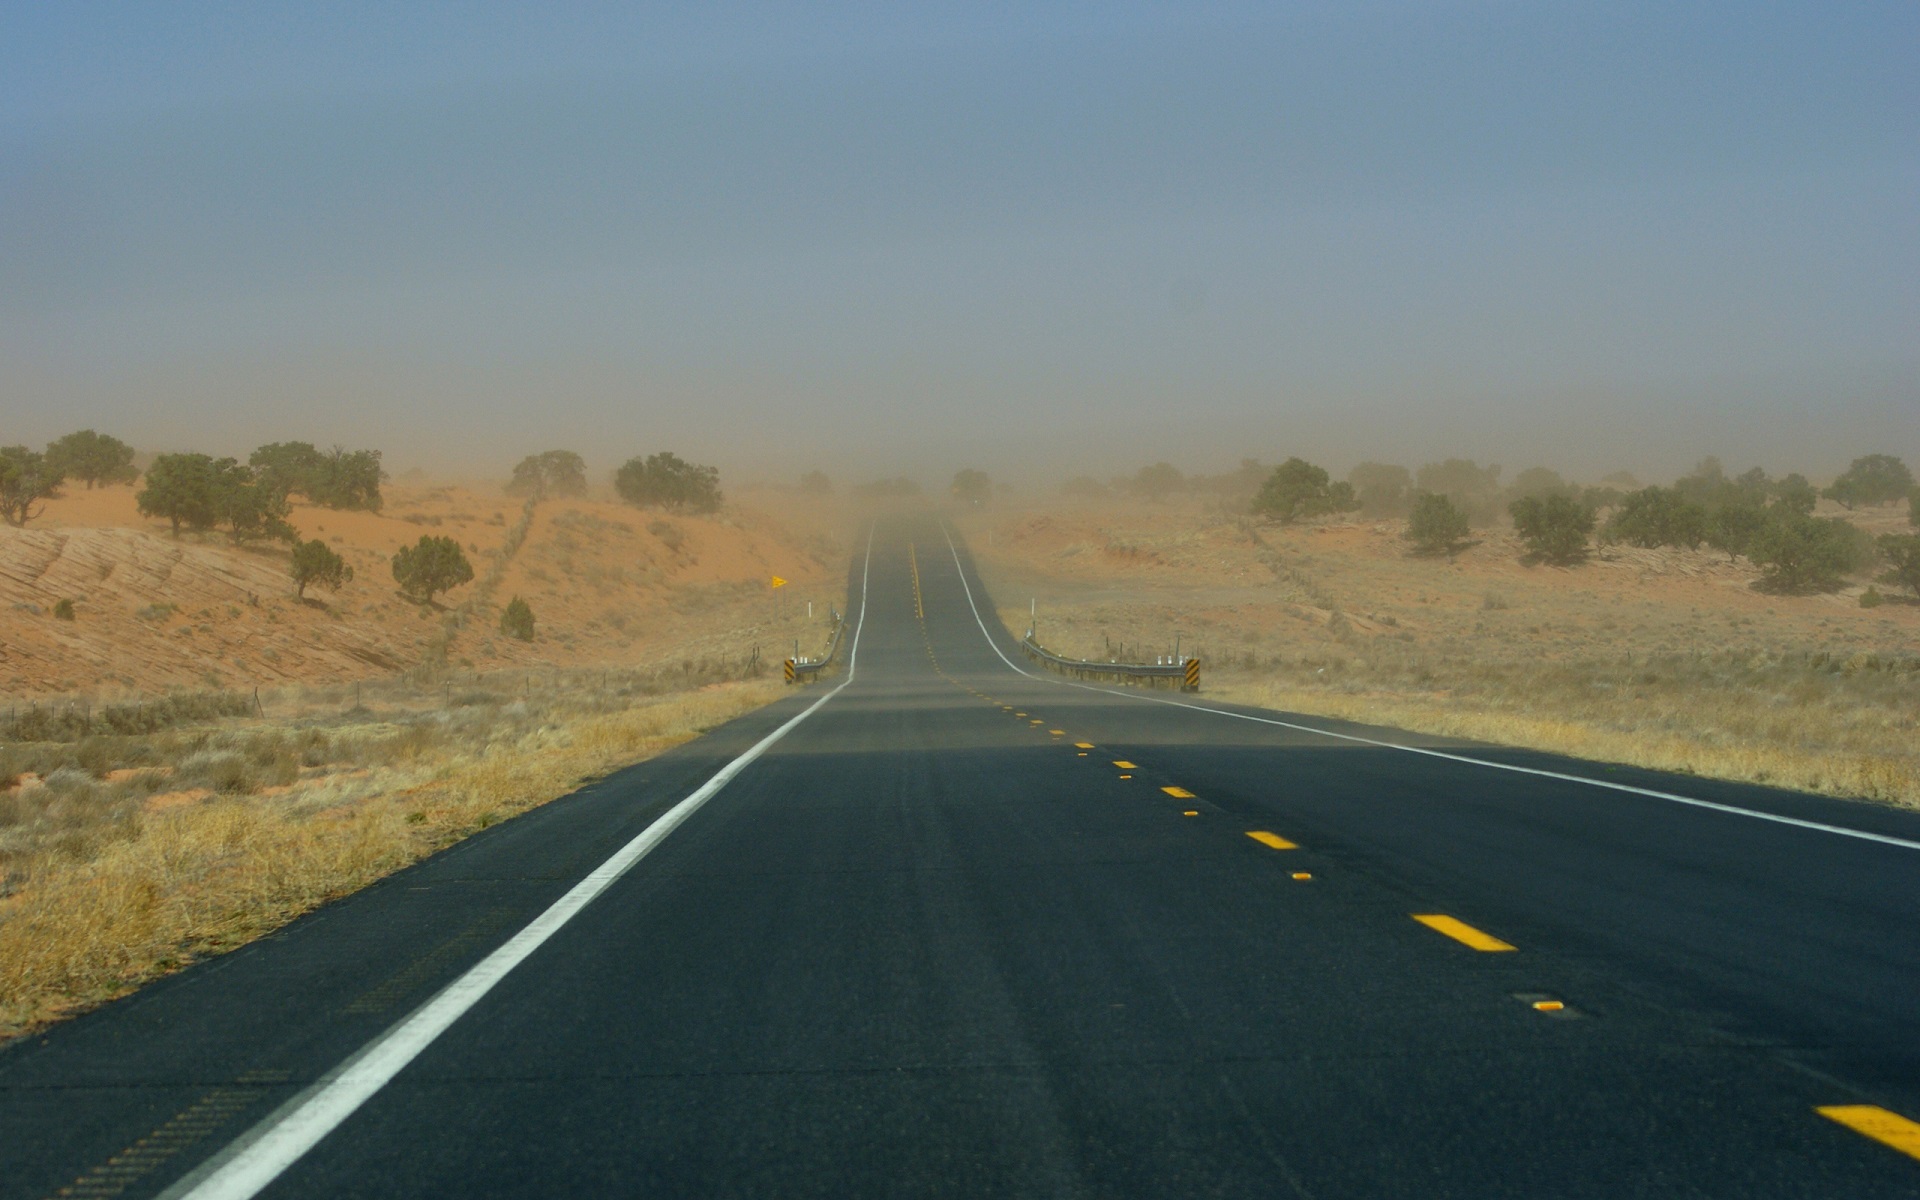 outback, man made, road, dust storm, dust, highway, landscape, sandstorm, tree